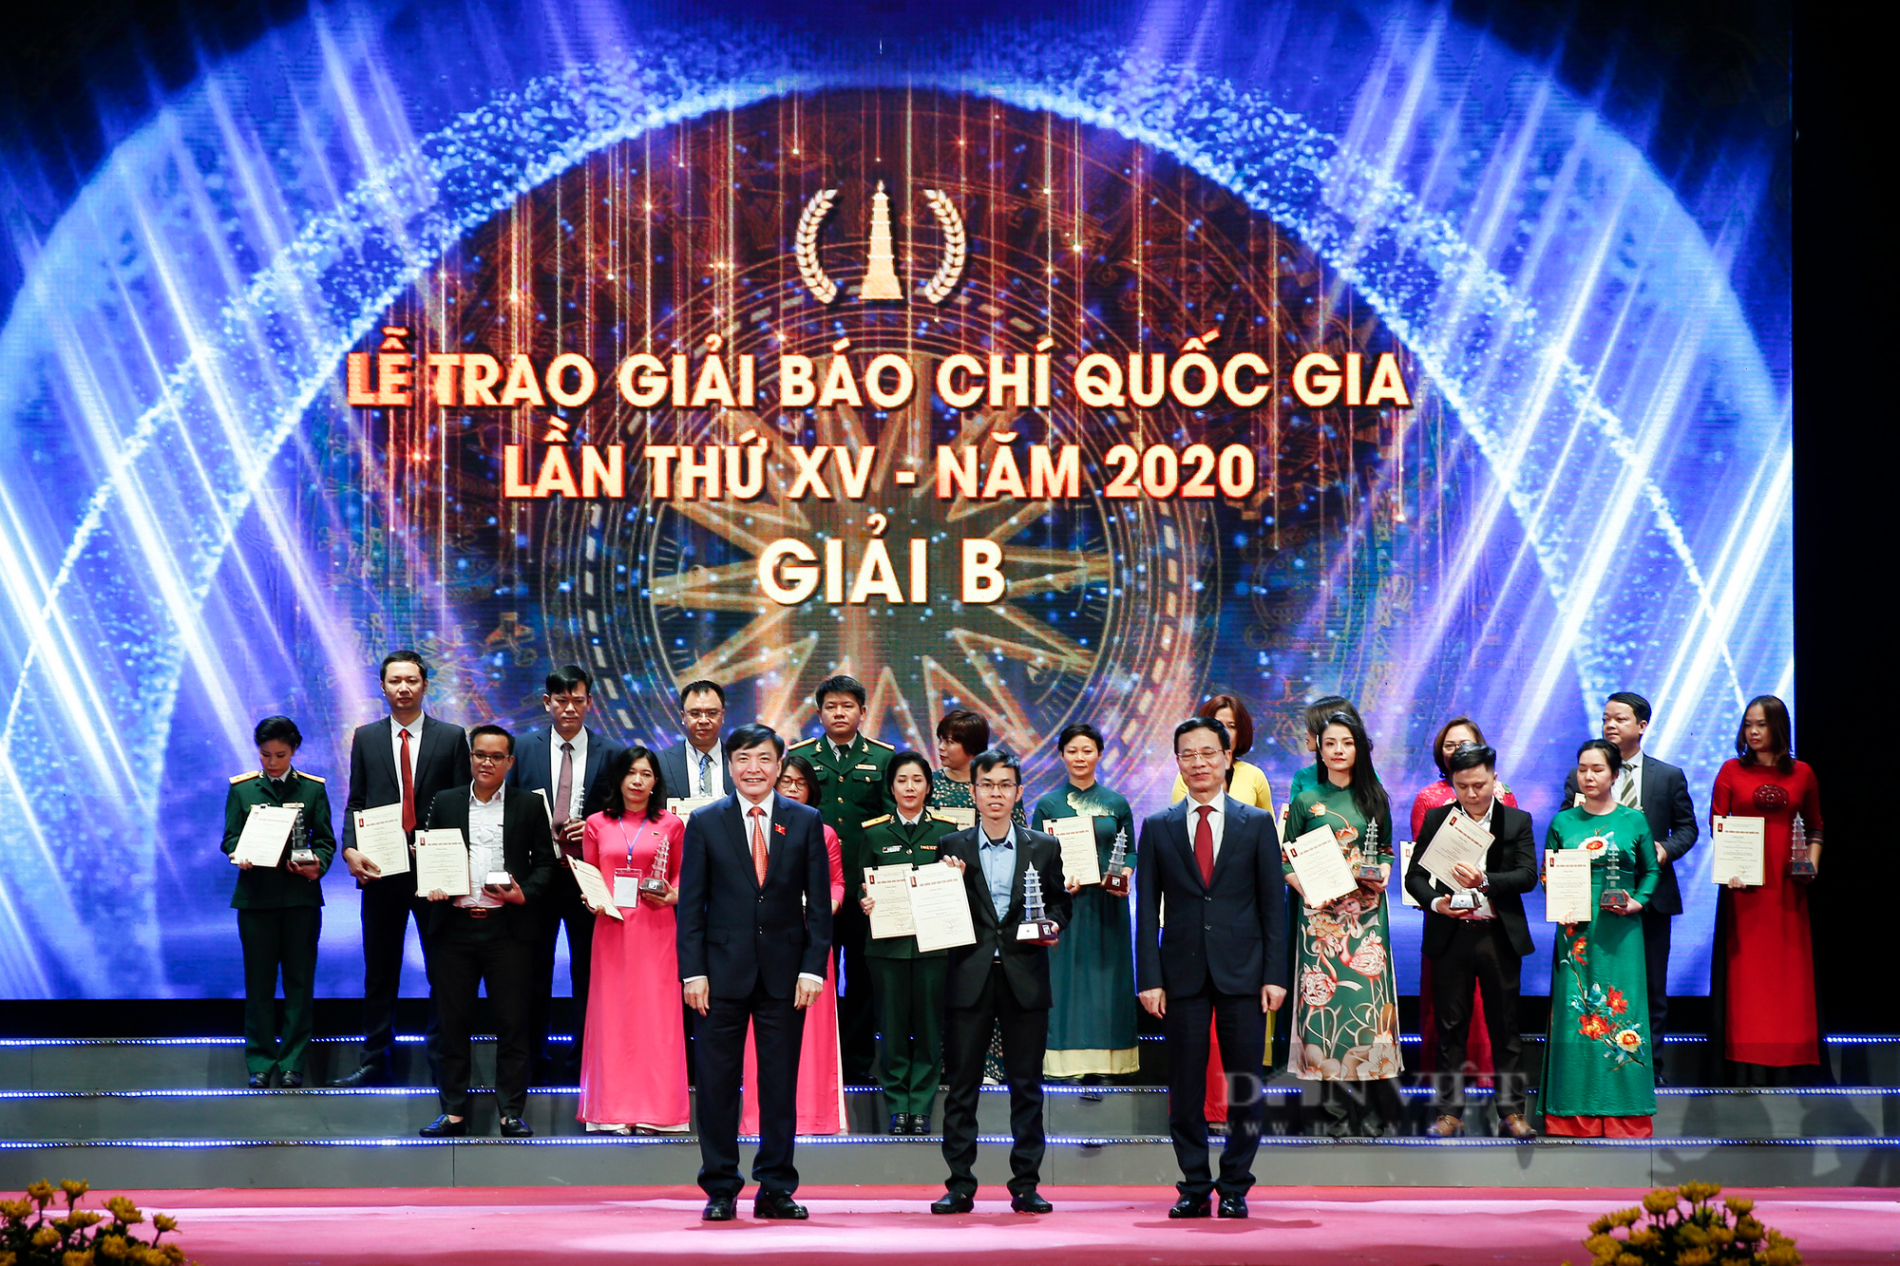 Ảnh: Chủ tịch nước Nguyễn Xuân Phúc dự Lễ trao Giải báo chí quốc gia lần thứ XV - năm 2020 - Ảnh 7.